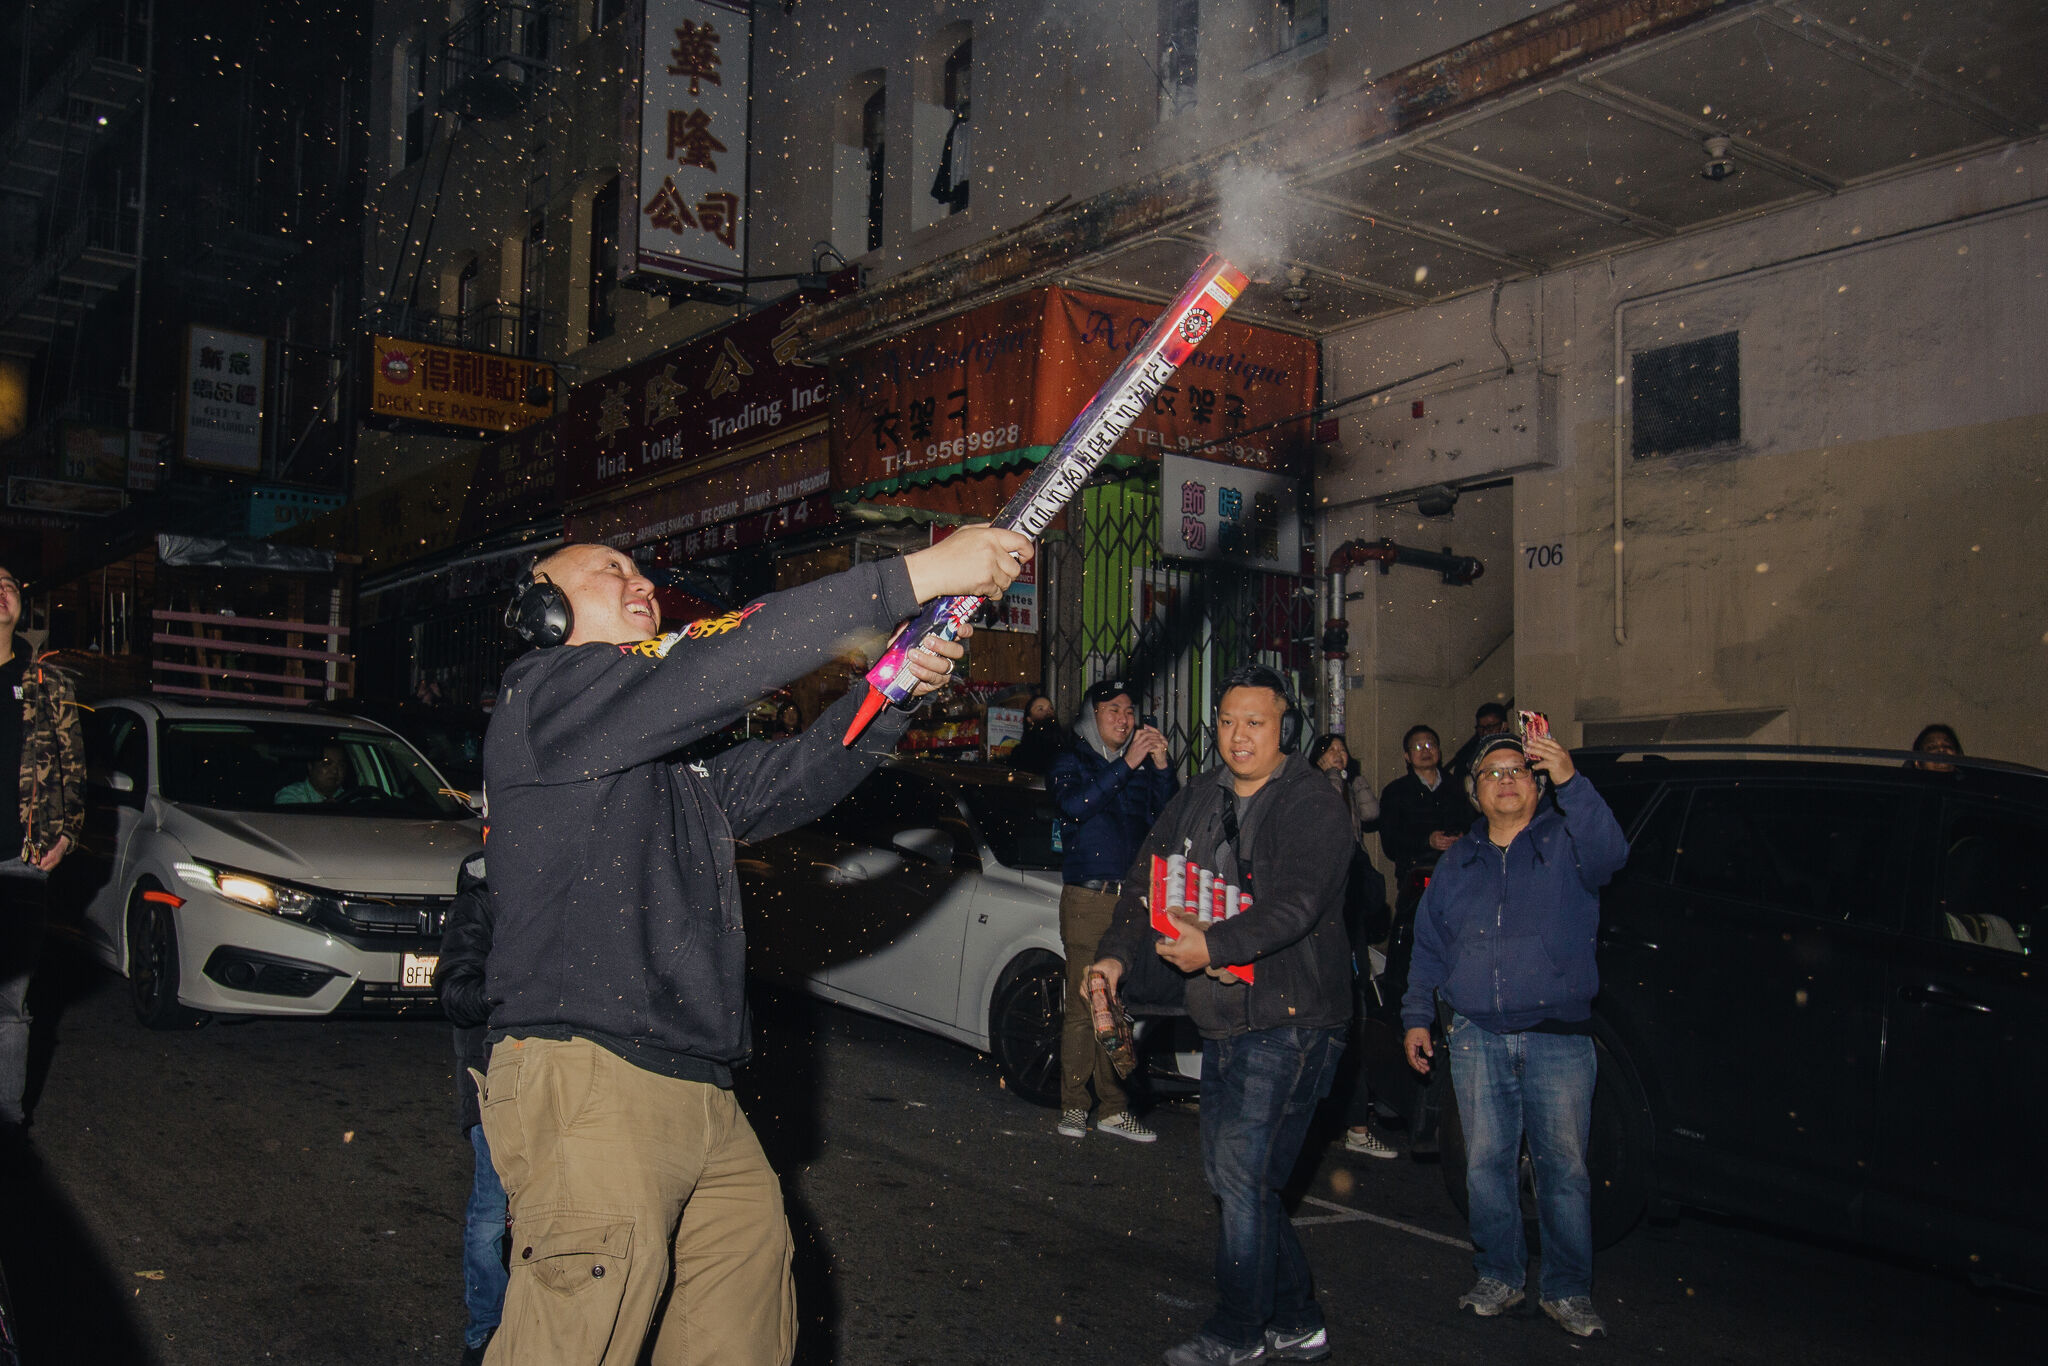 Wild Lunar New Year's fireworks erupt in San Francisco